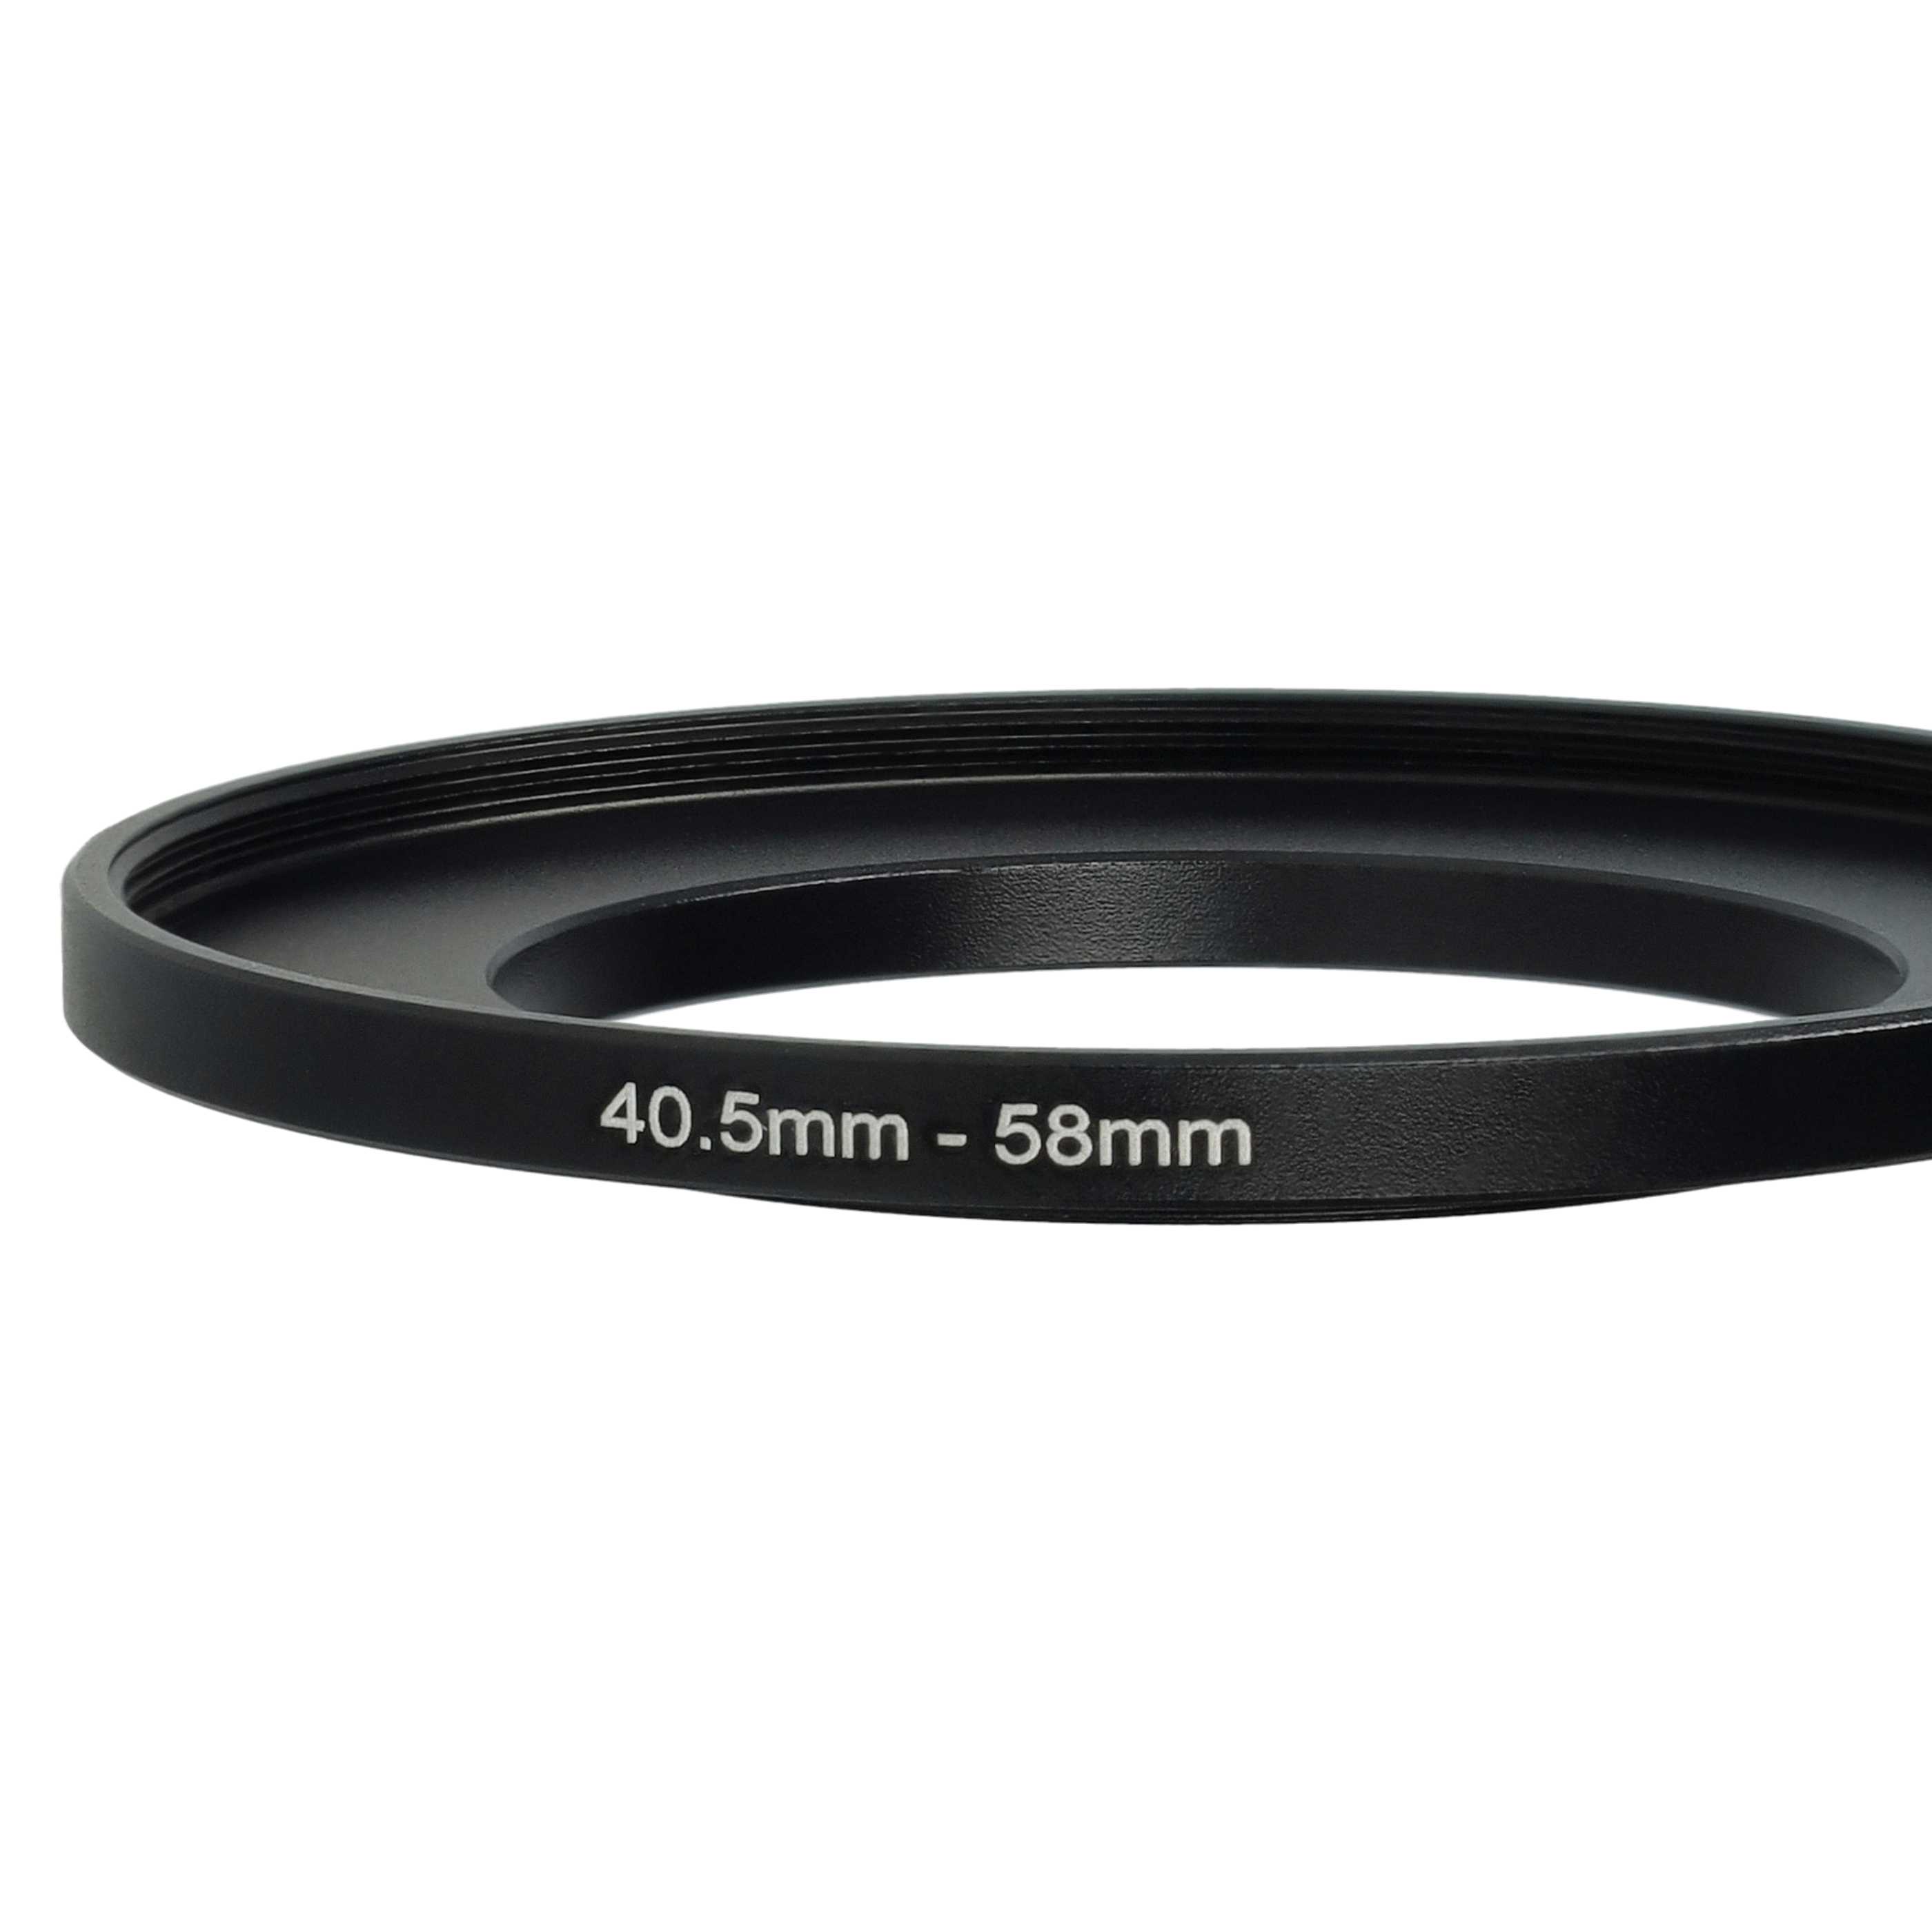 Bague Step-up 40,5 mm vers 58 mm pour divers objectifs d'appareil photo - Adaptateur filtre